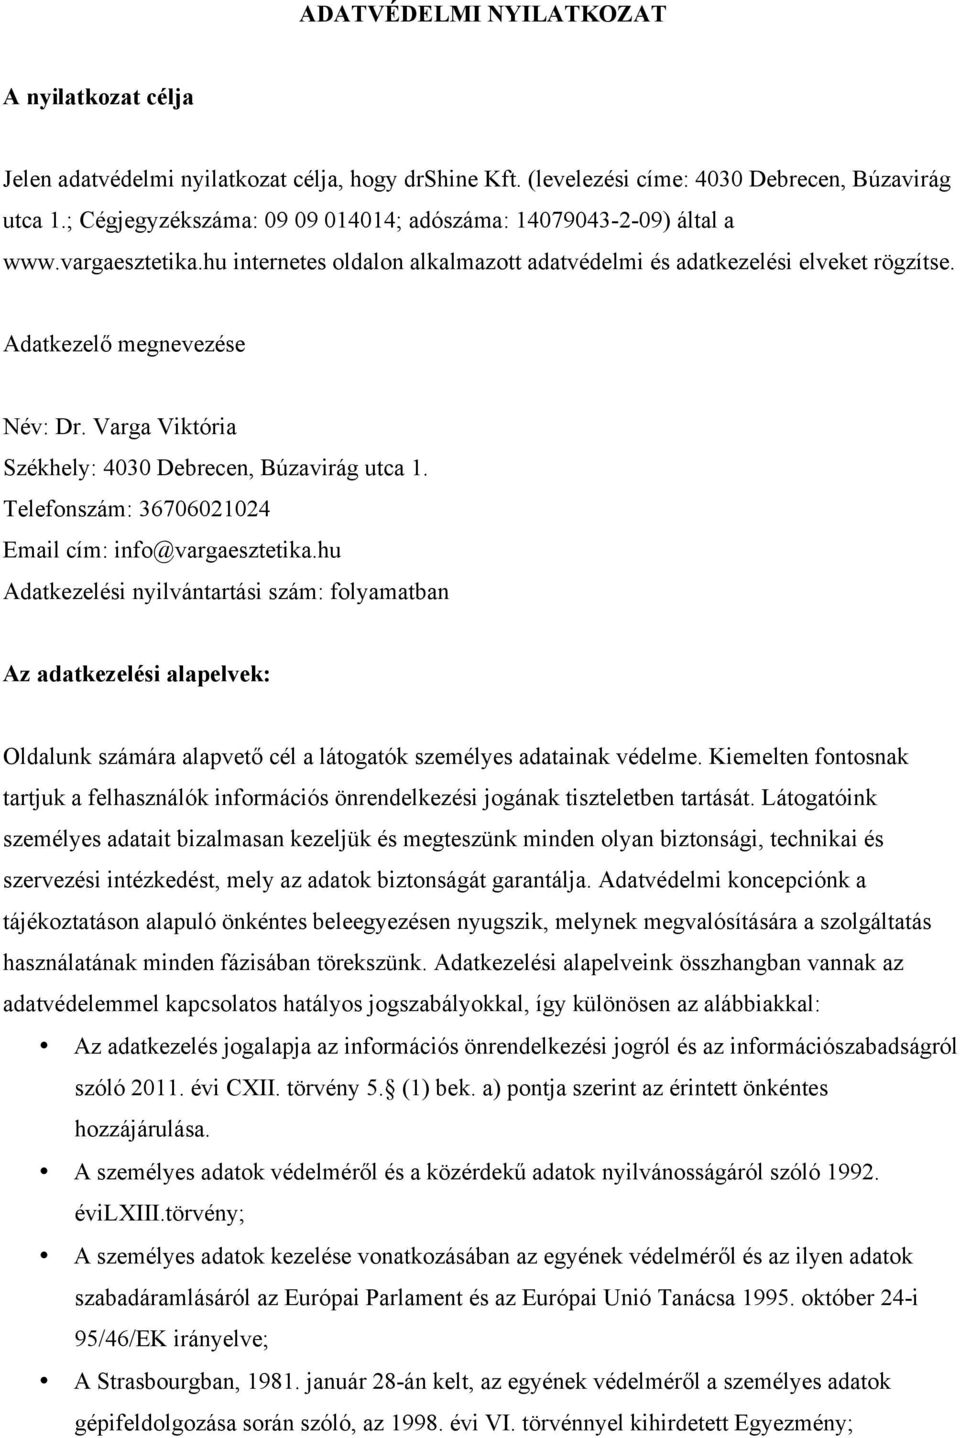 Varga Viktória Székhely: 4030 Debrecen, Búzavirág utca 1. Telefonszám: 36706021024 Email cím: info@vargaesztetika.